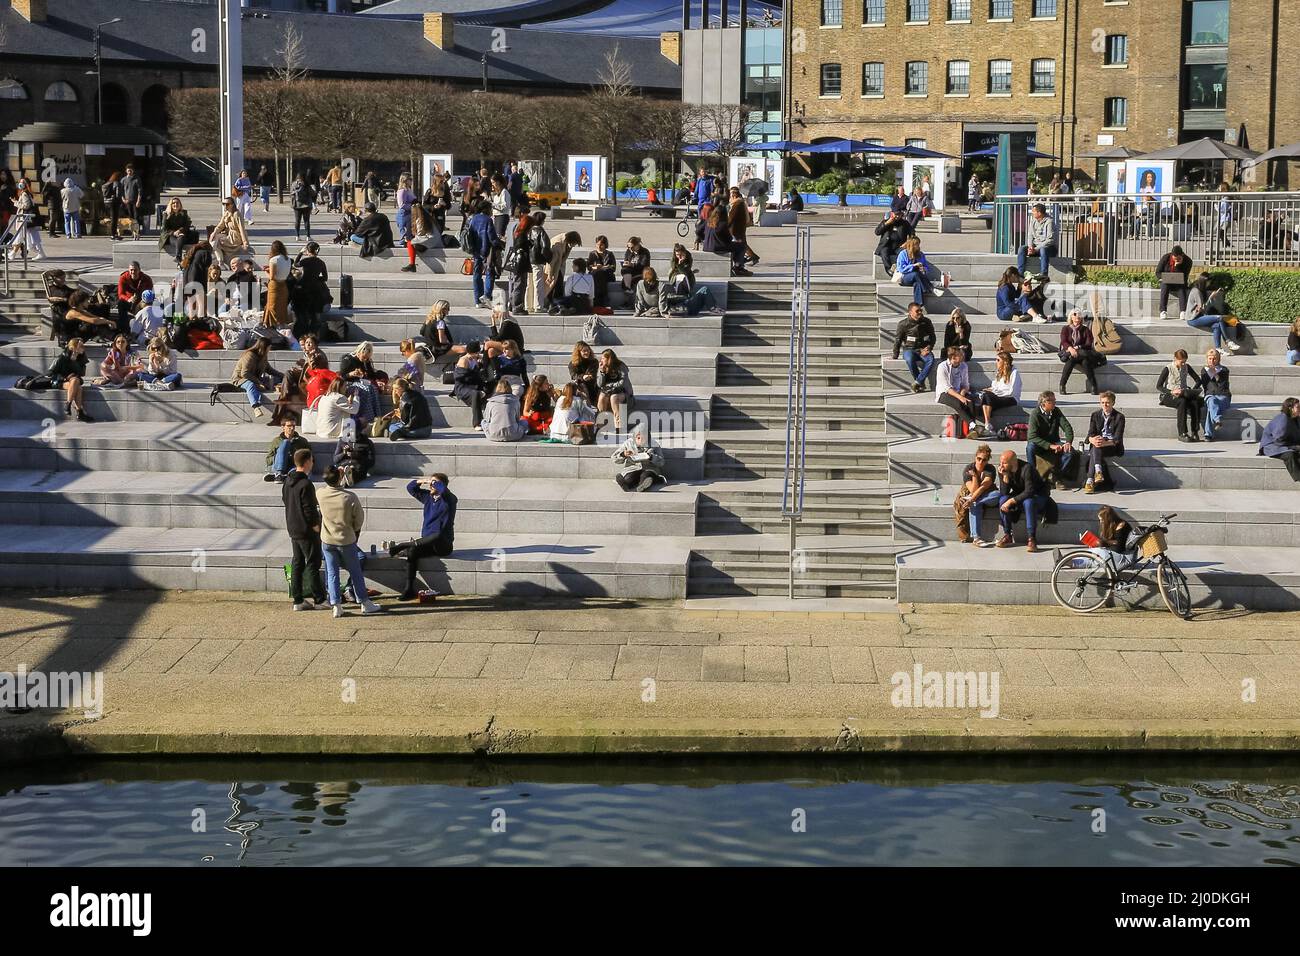 Londres, Royaume-Uni. 18th mars 2022. Les gens de la place Granary de Londres bronzer au bord du canal. La capitale a connu une journée bien ensoleillée avec des températures allant jusqu'à 17 degrés et un ciel bleu clair tout au long de la journée. Credit: Imagetraceur/Alamy Live News Banque D'Images